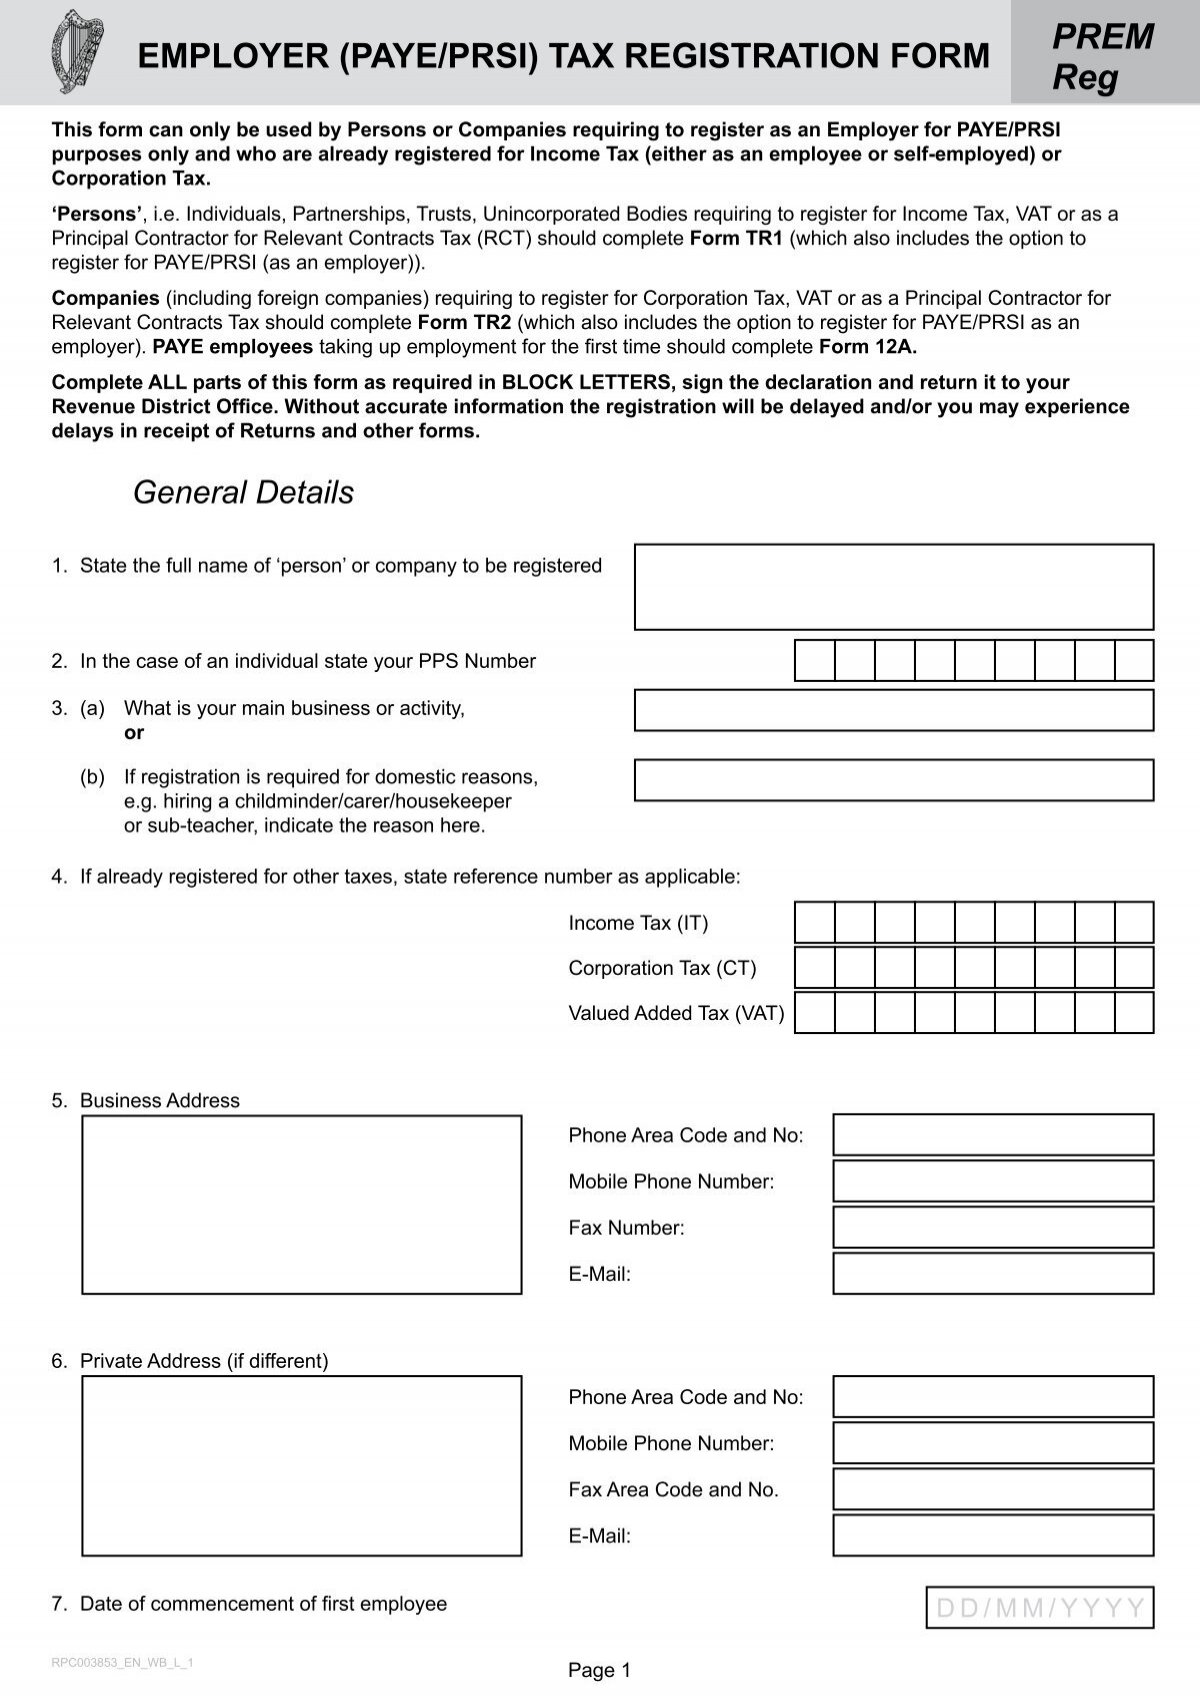 prem-reg-employer-paye-prsi-tax-registration-form